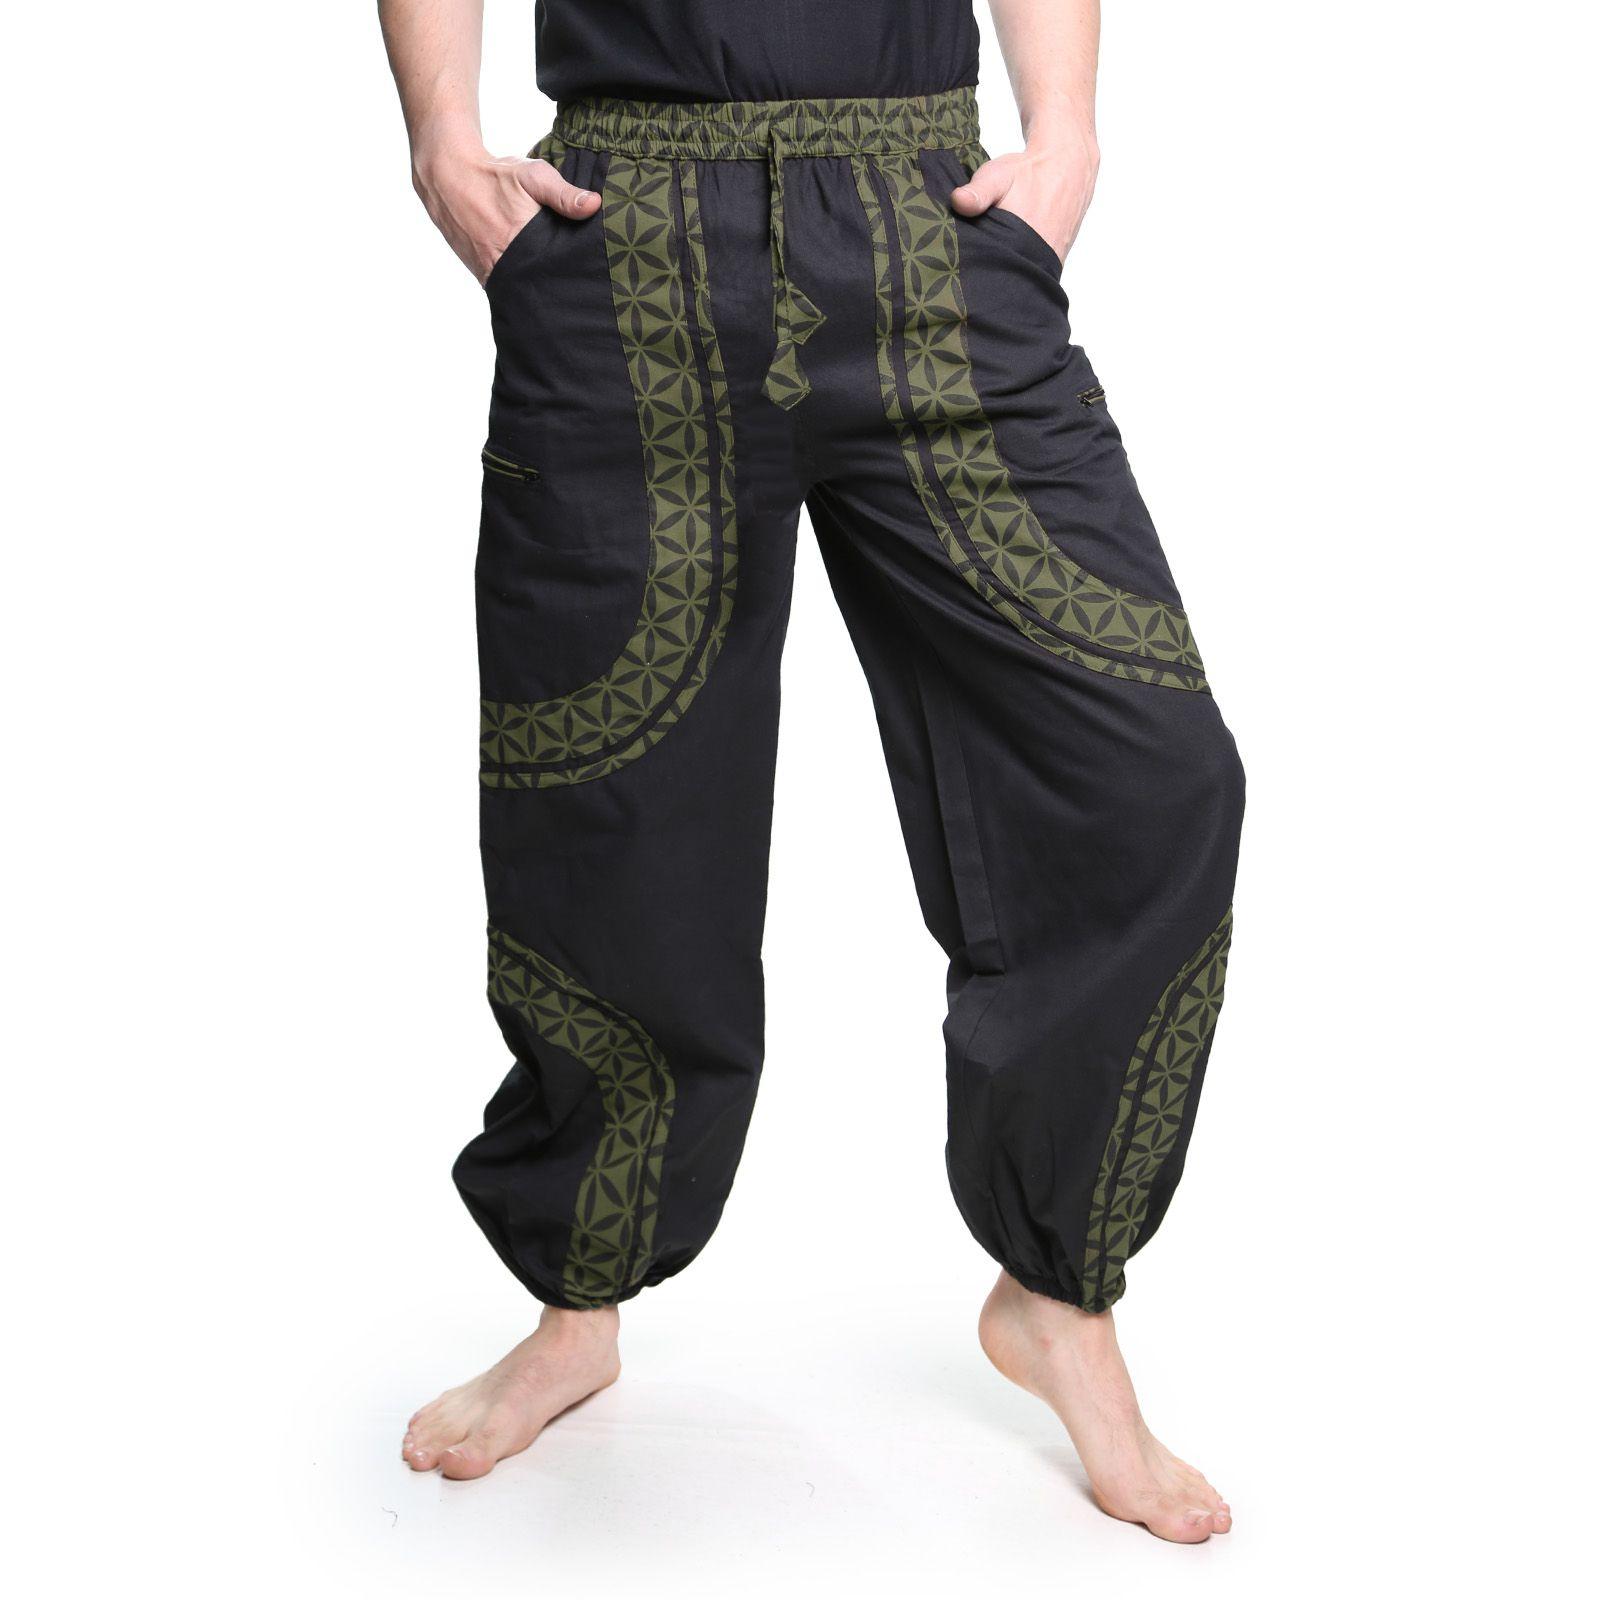 Om Hippie Logo - OM Unisex Psy Baggy Pants Hippie Pants Goa Cotton Dance Pants